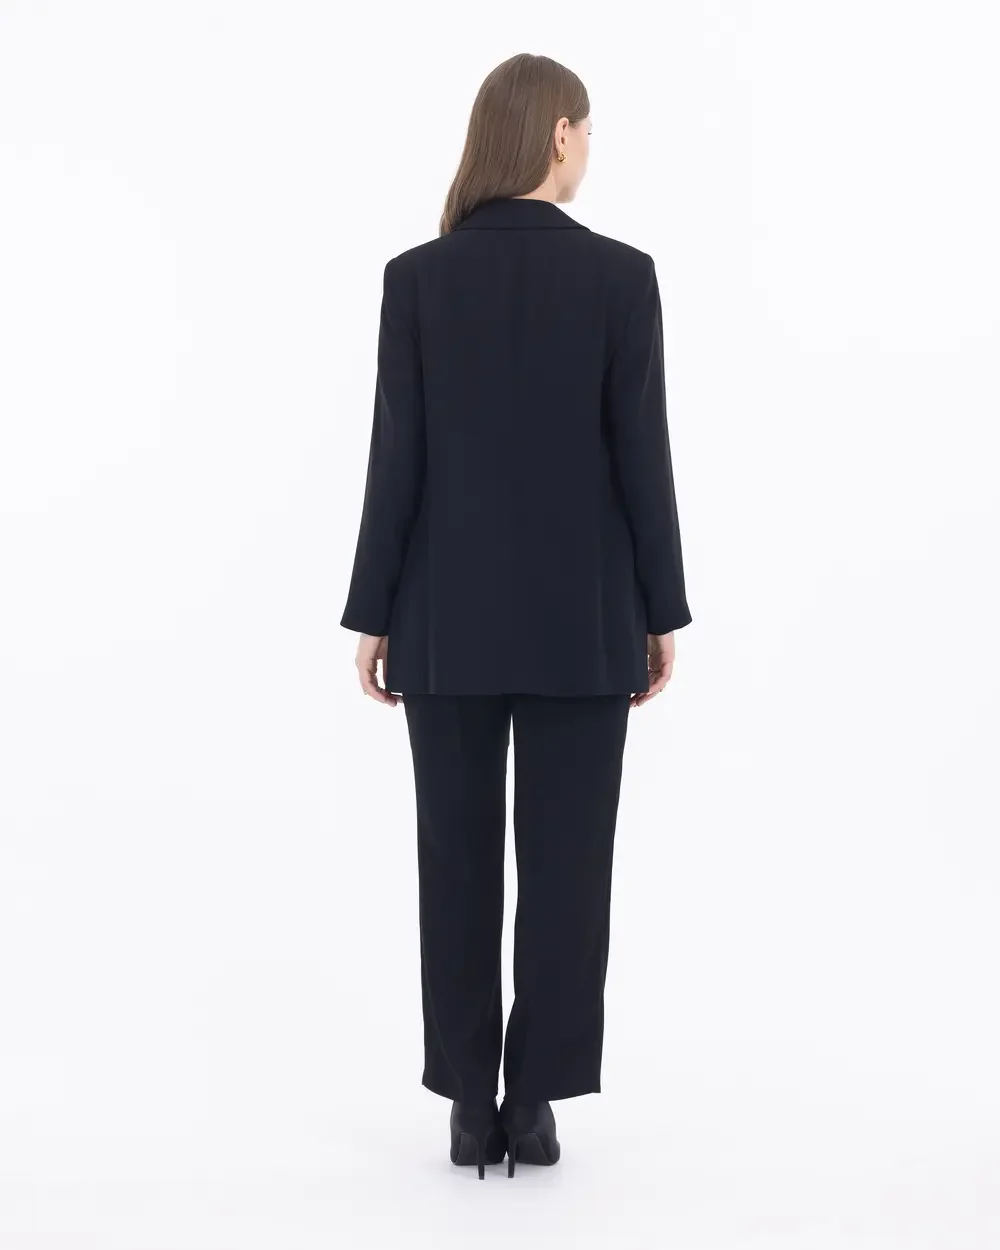 Kadın Büyük Beden Düğme Detaylı Blazer Ceket - Siyah - 6